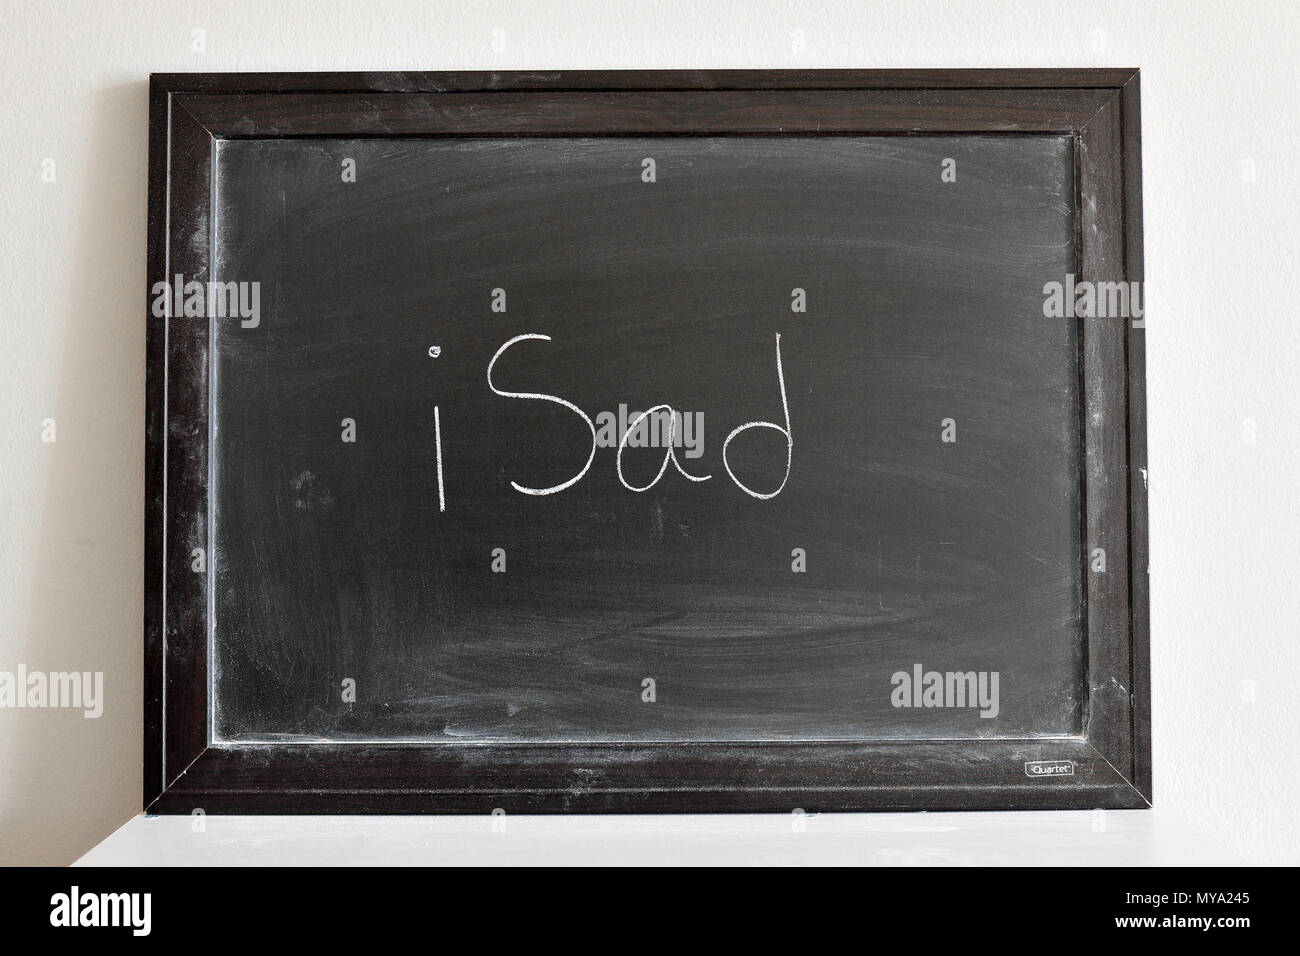 iSad written in white chalk on a blackboard Stock Photo